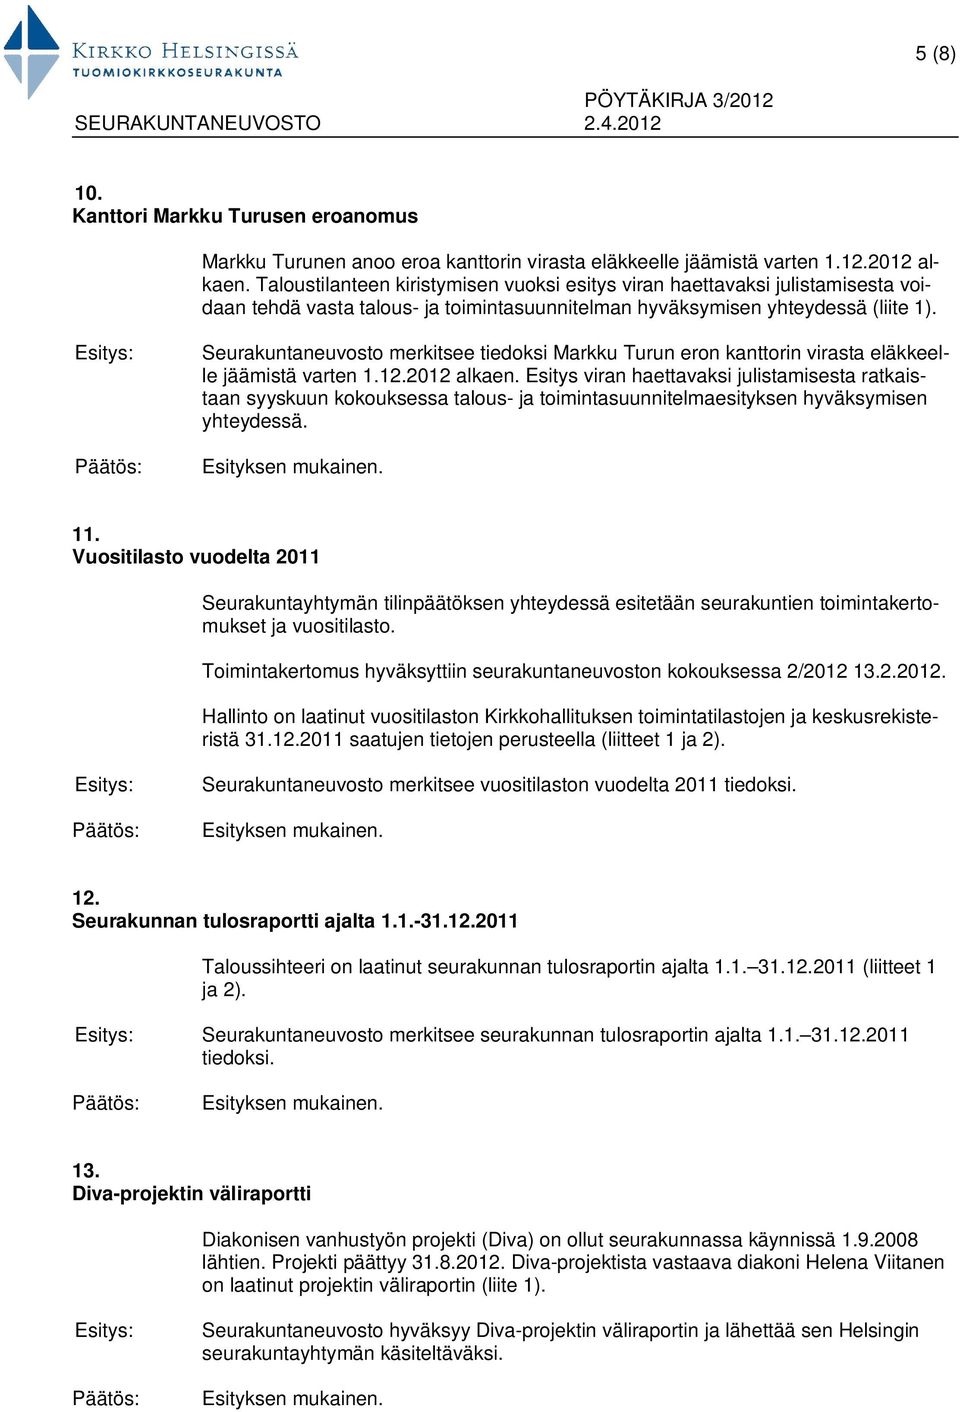 Seurakuntaneuvosto merkitsee tiedoksi Markku Turun eron kanttorin virasta eläkkeelle jäämistä varten 1.12.2012 alkaen.